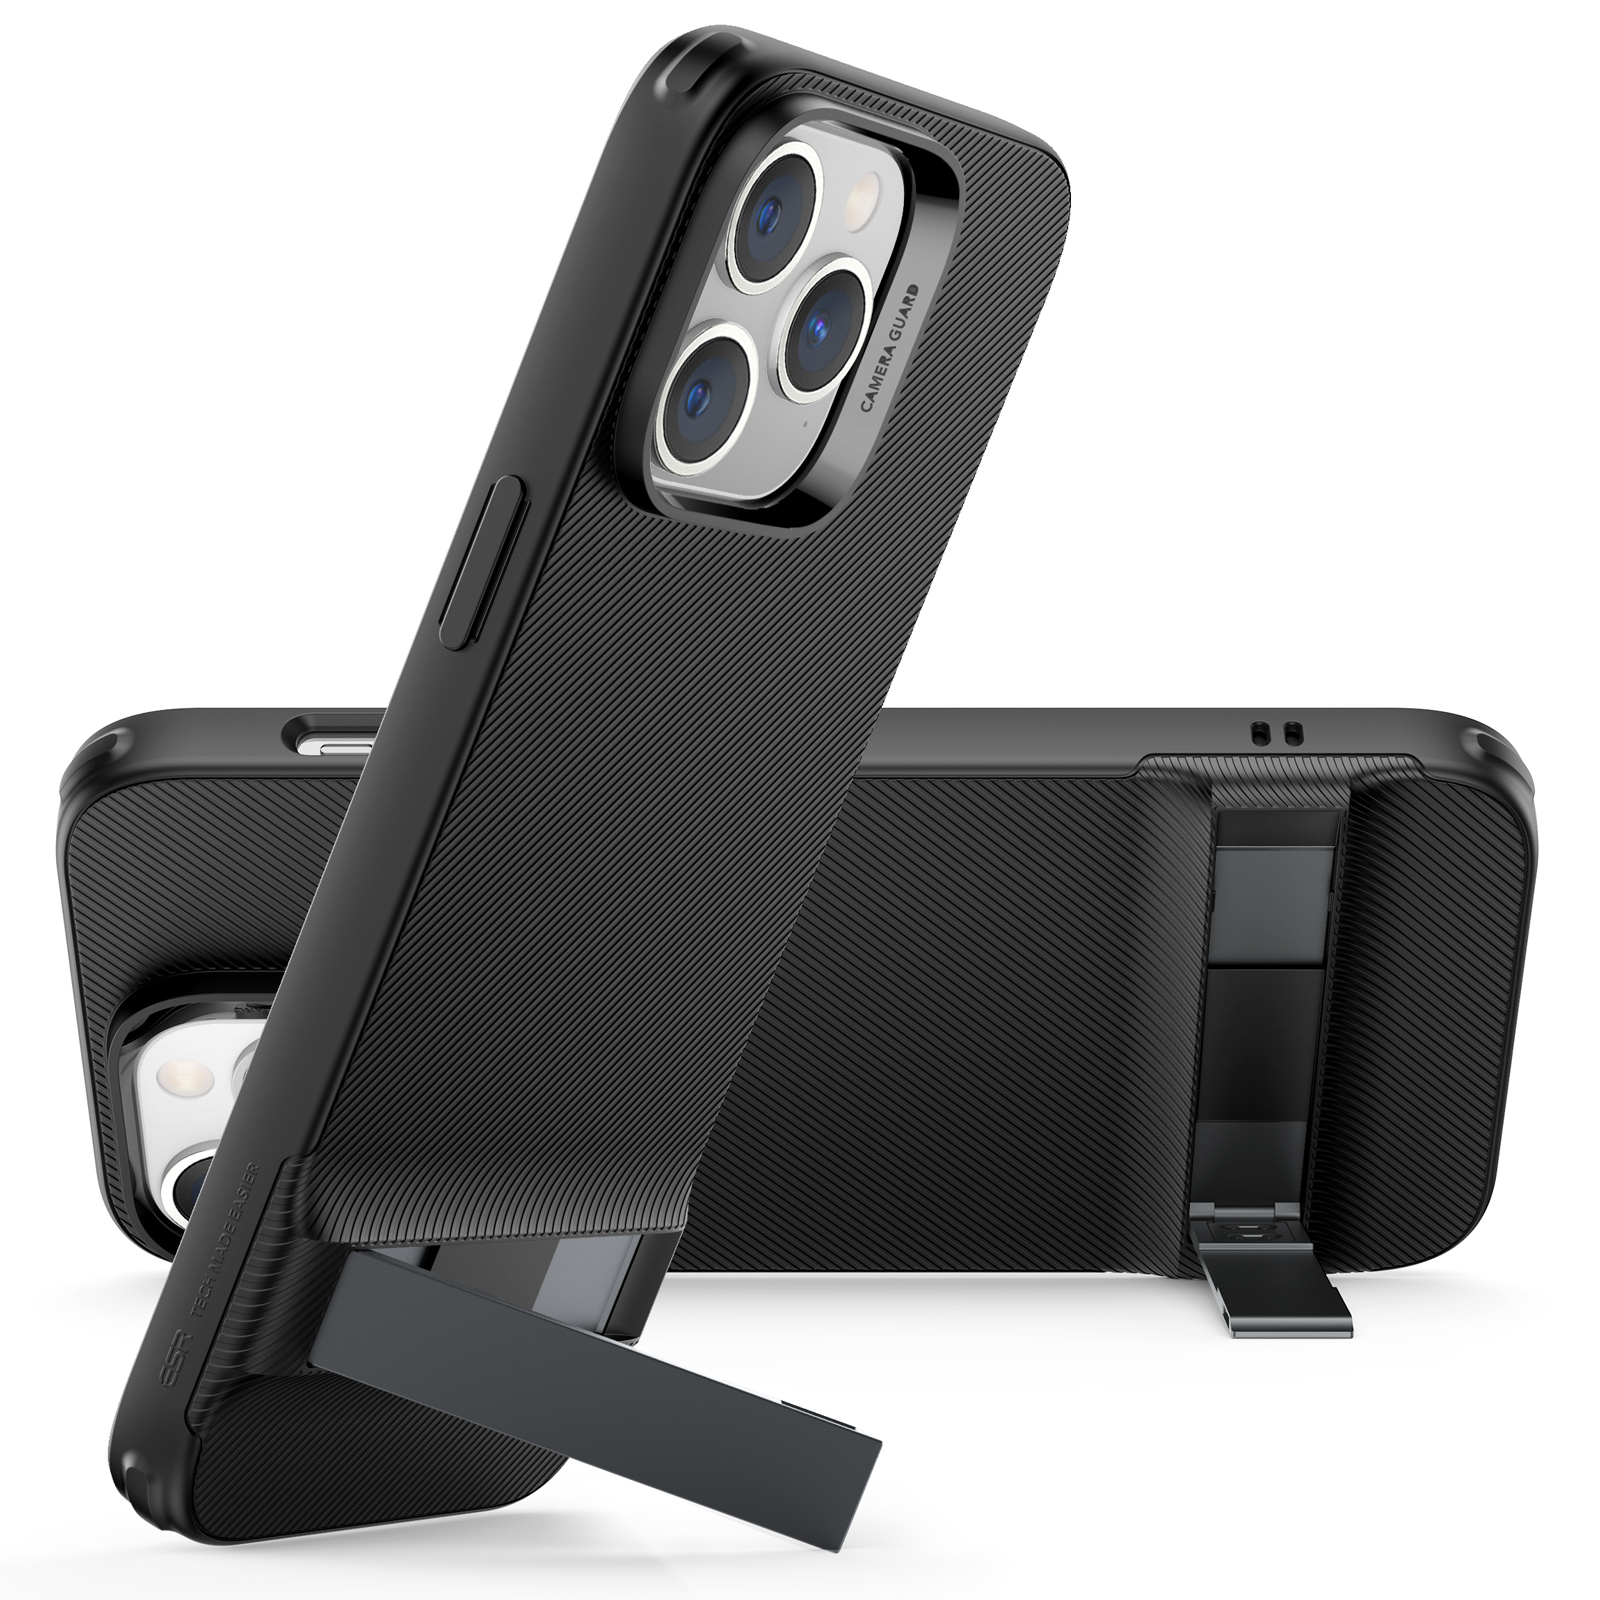 Estuche y protector de pantalla de vidrio Case-Mate para Apple iPhone 14  Pro Max c/MagSafe de Xfinity Mobile en color Transparente